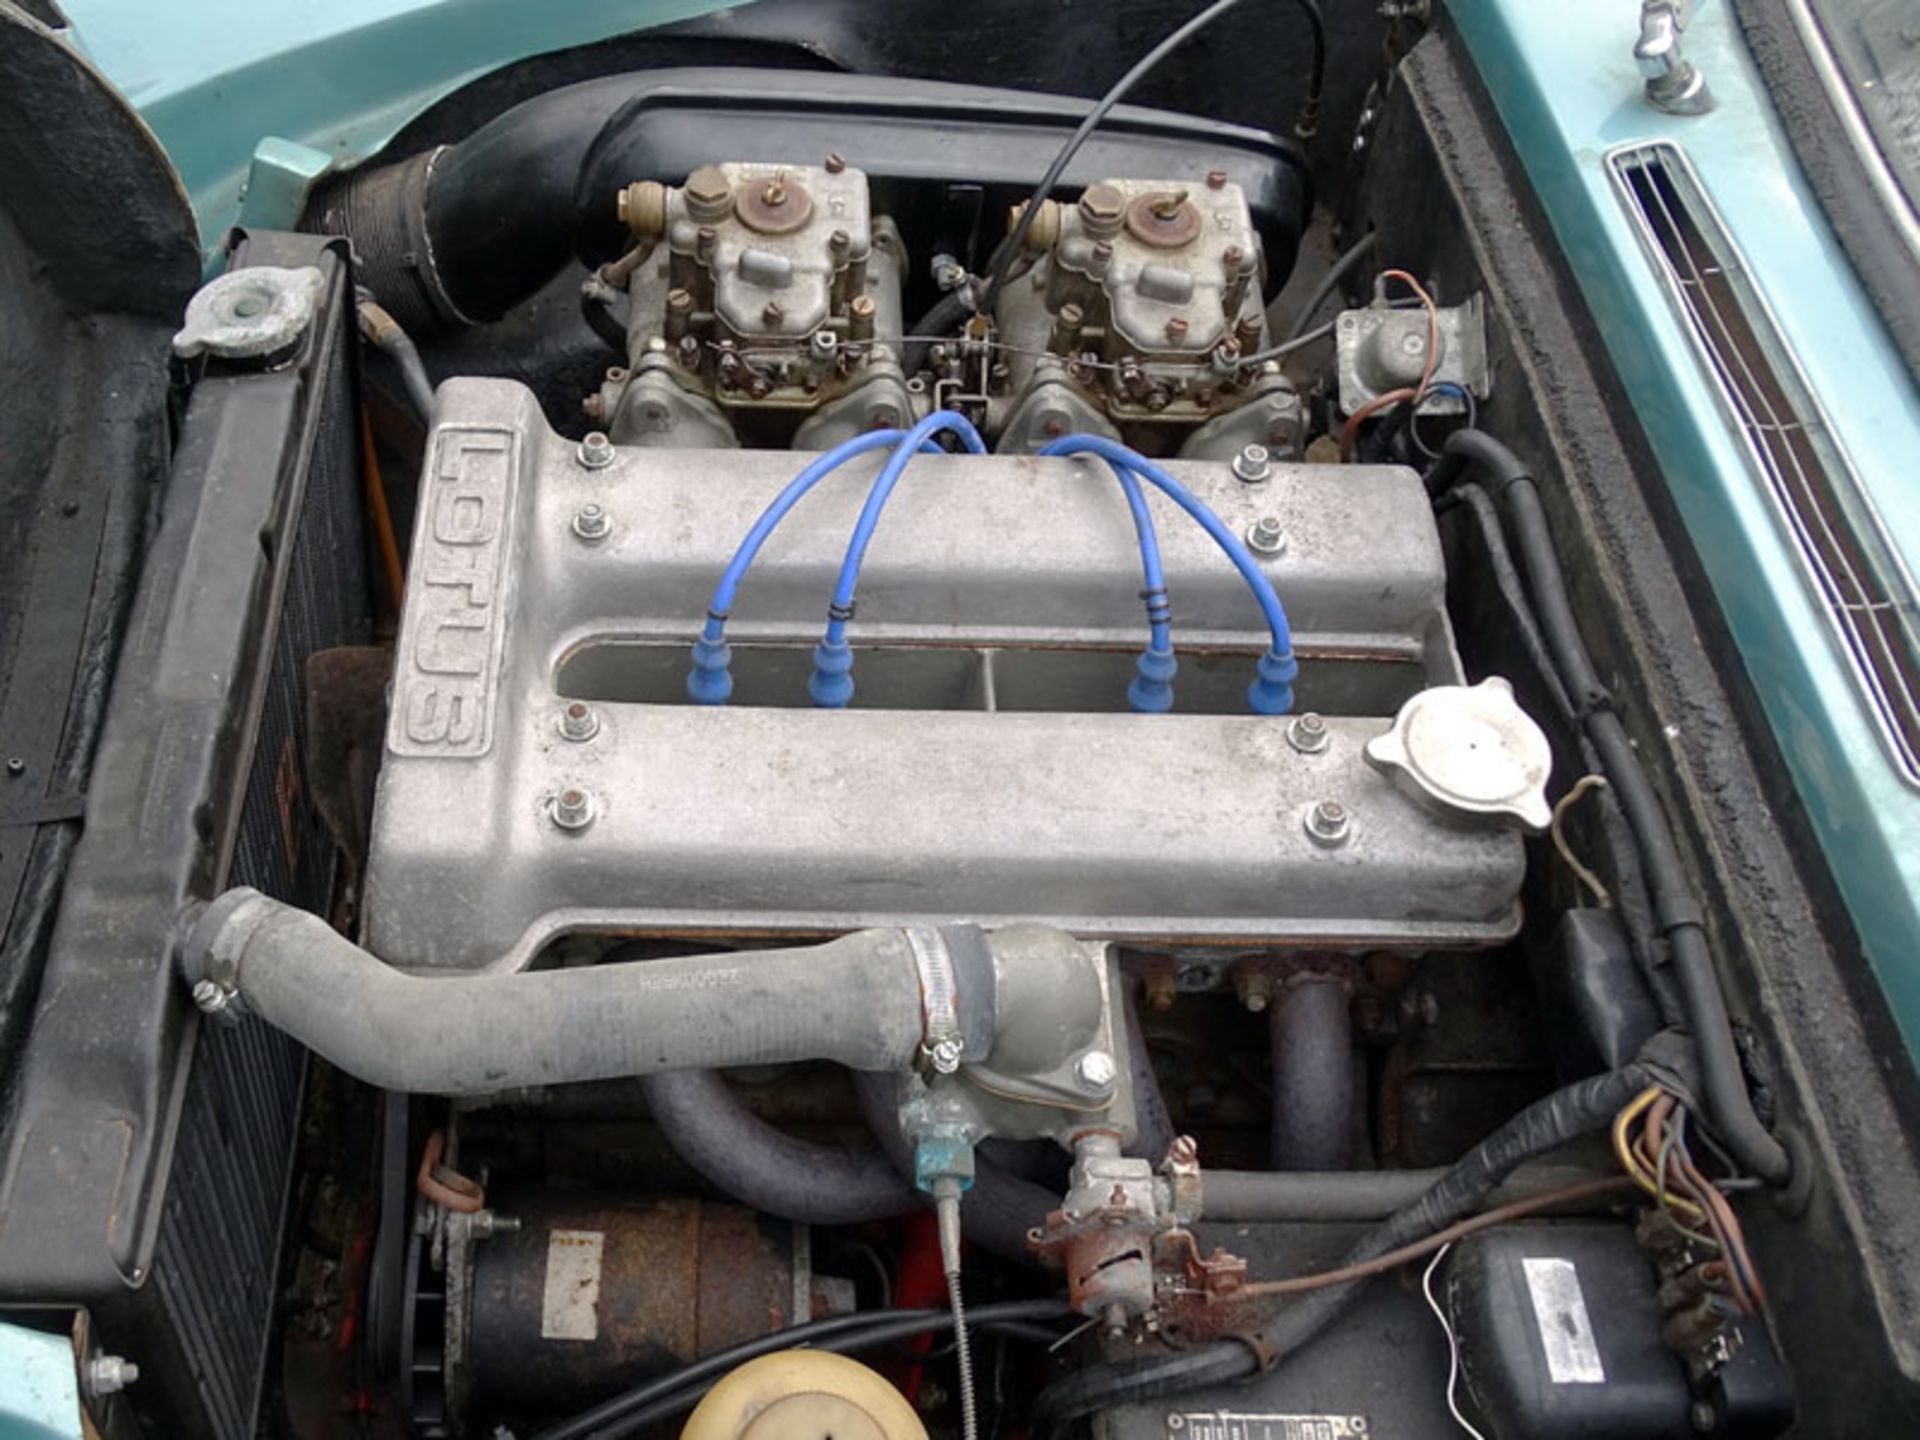 1968 Lotus Elan S3 Drophead Coupe - Image 5 of 5